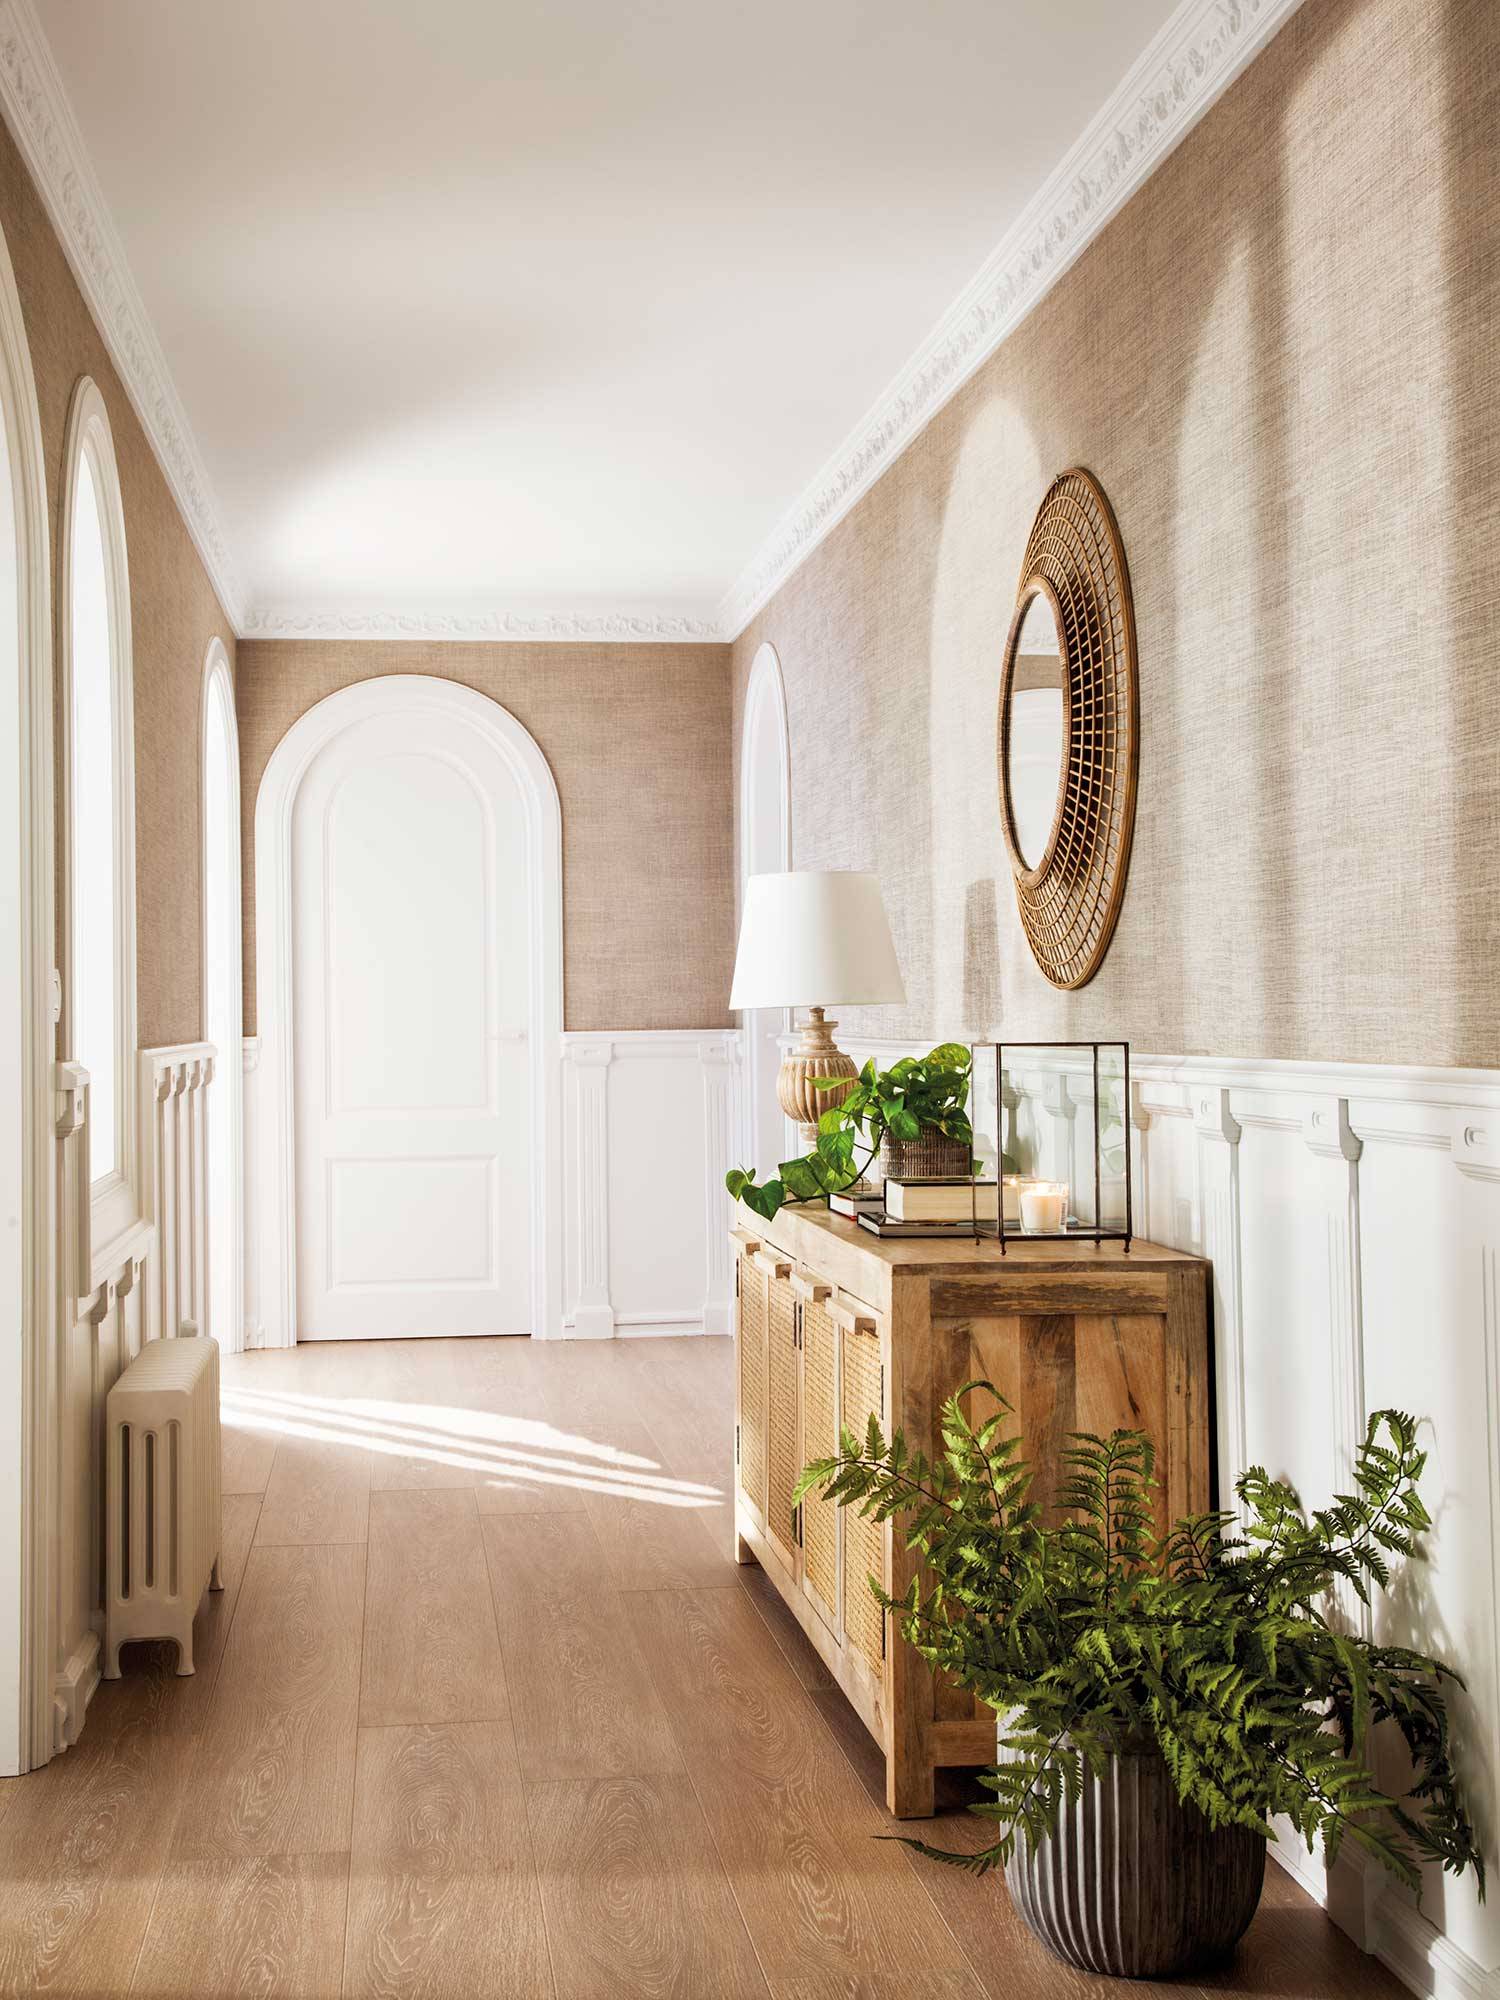 Recibidor clásico con aparador de madera, espejo redondo y paredes con molduras blancas.